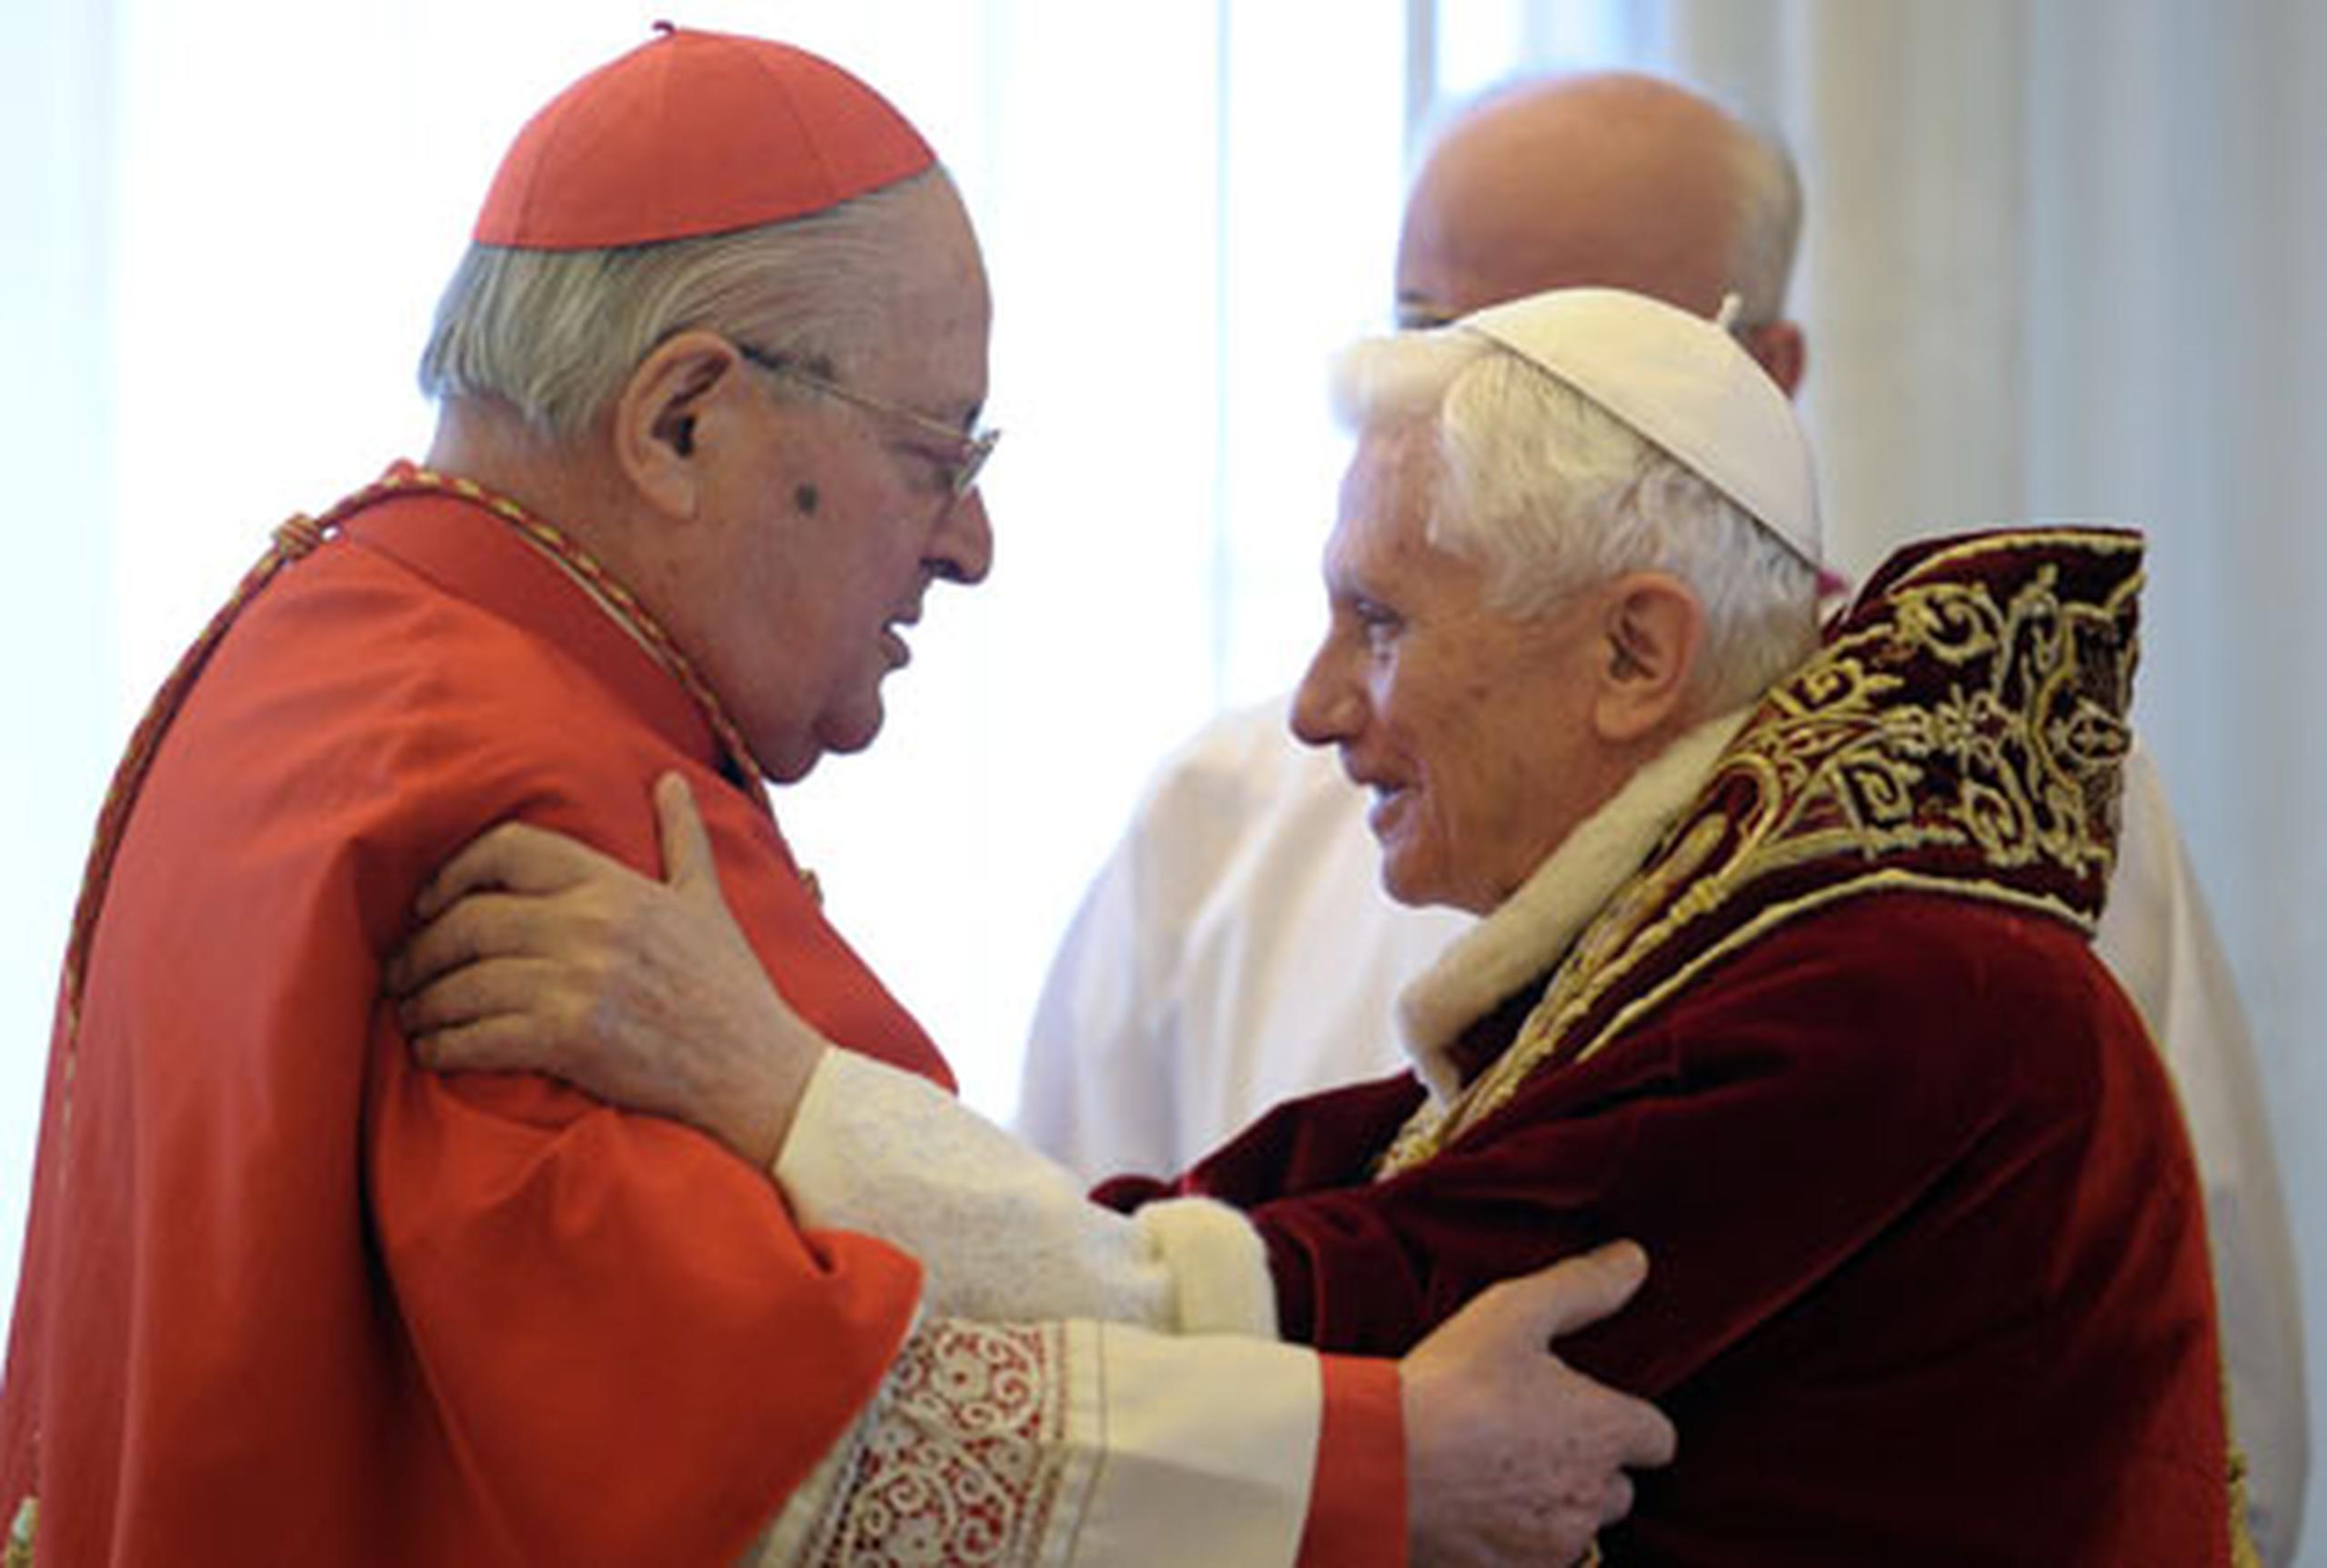 El cardenal Sodano expresó su satisfacción porque antes del 28 de febrero, fecha fijada por el papa para abandonar el Trono de Pedro, "tendremos la alegría de escuchar su voz de pastor". (AP)